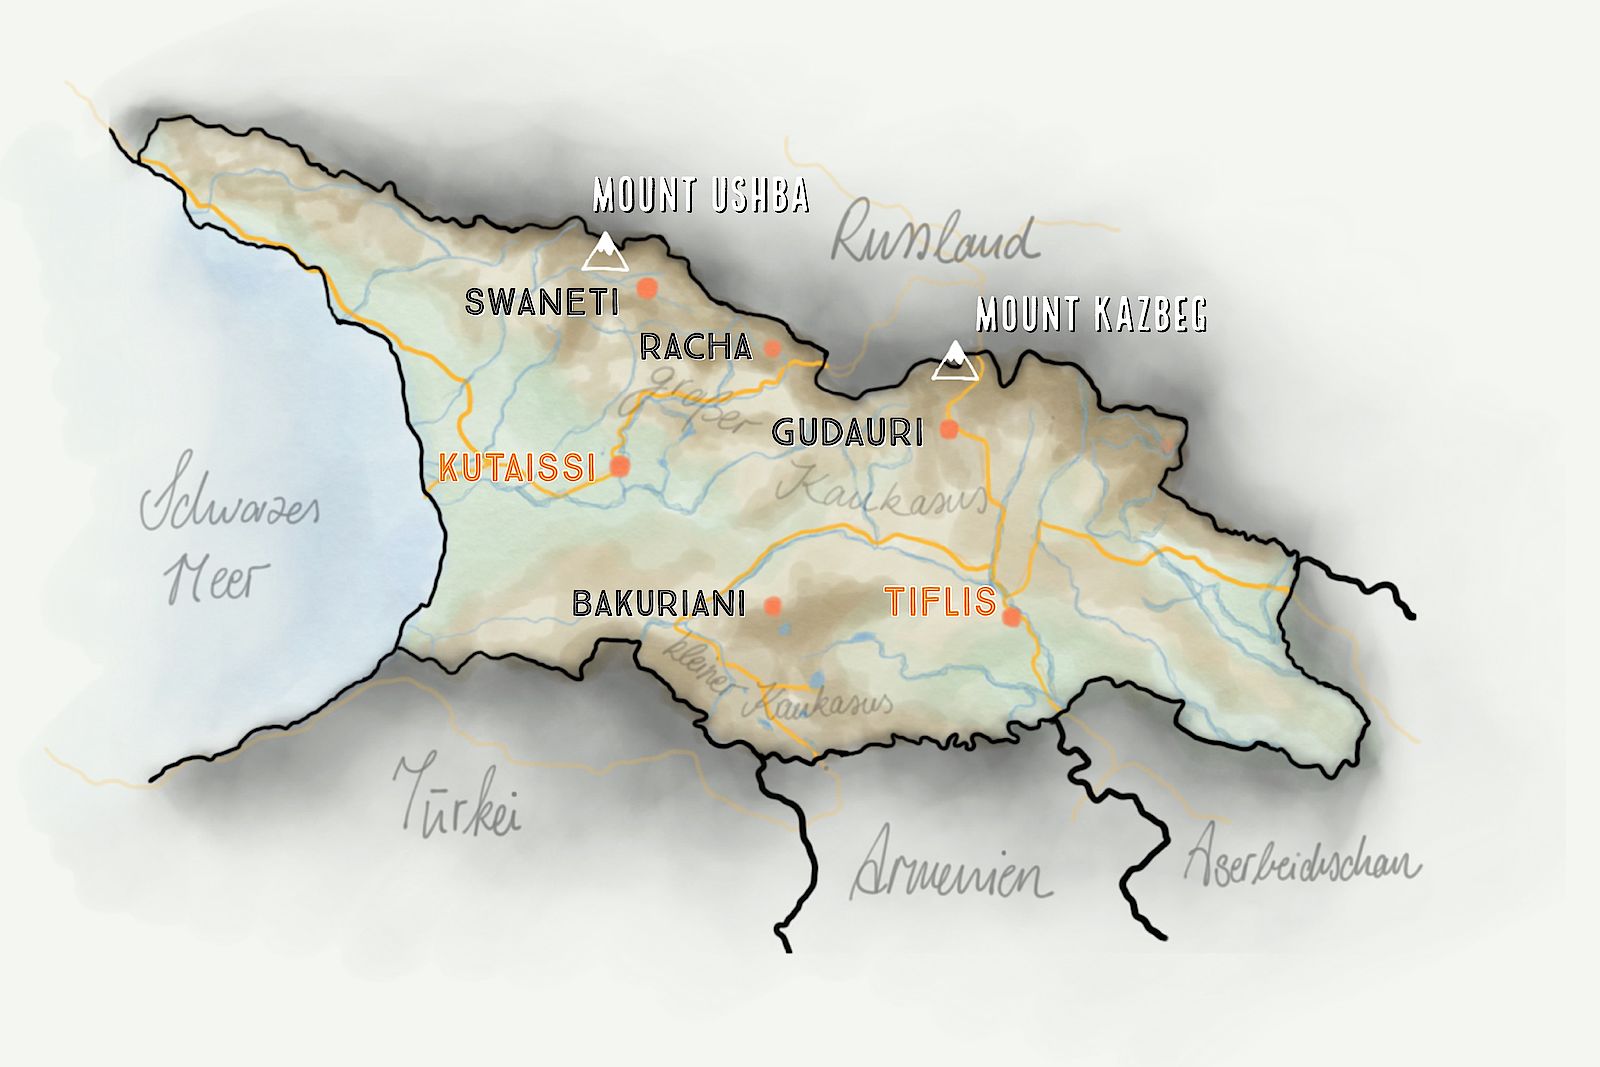 Karte Georgien